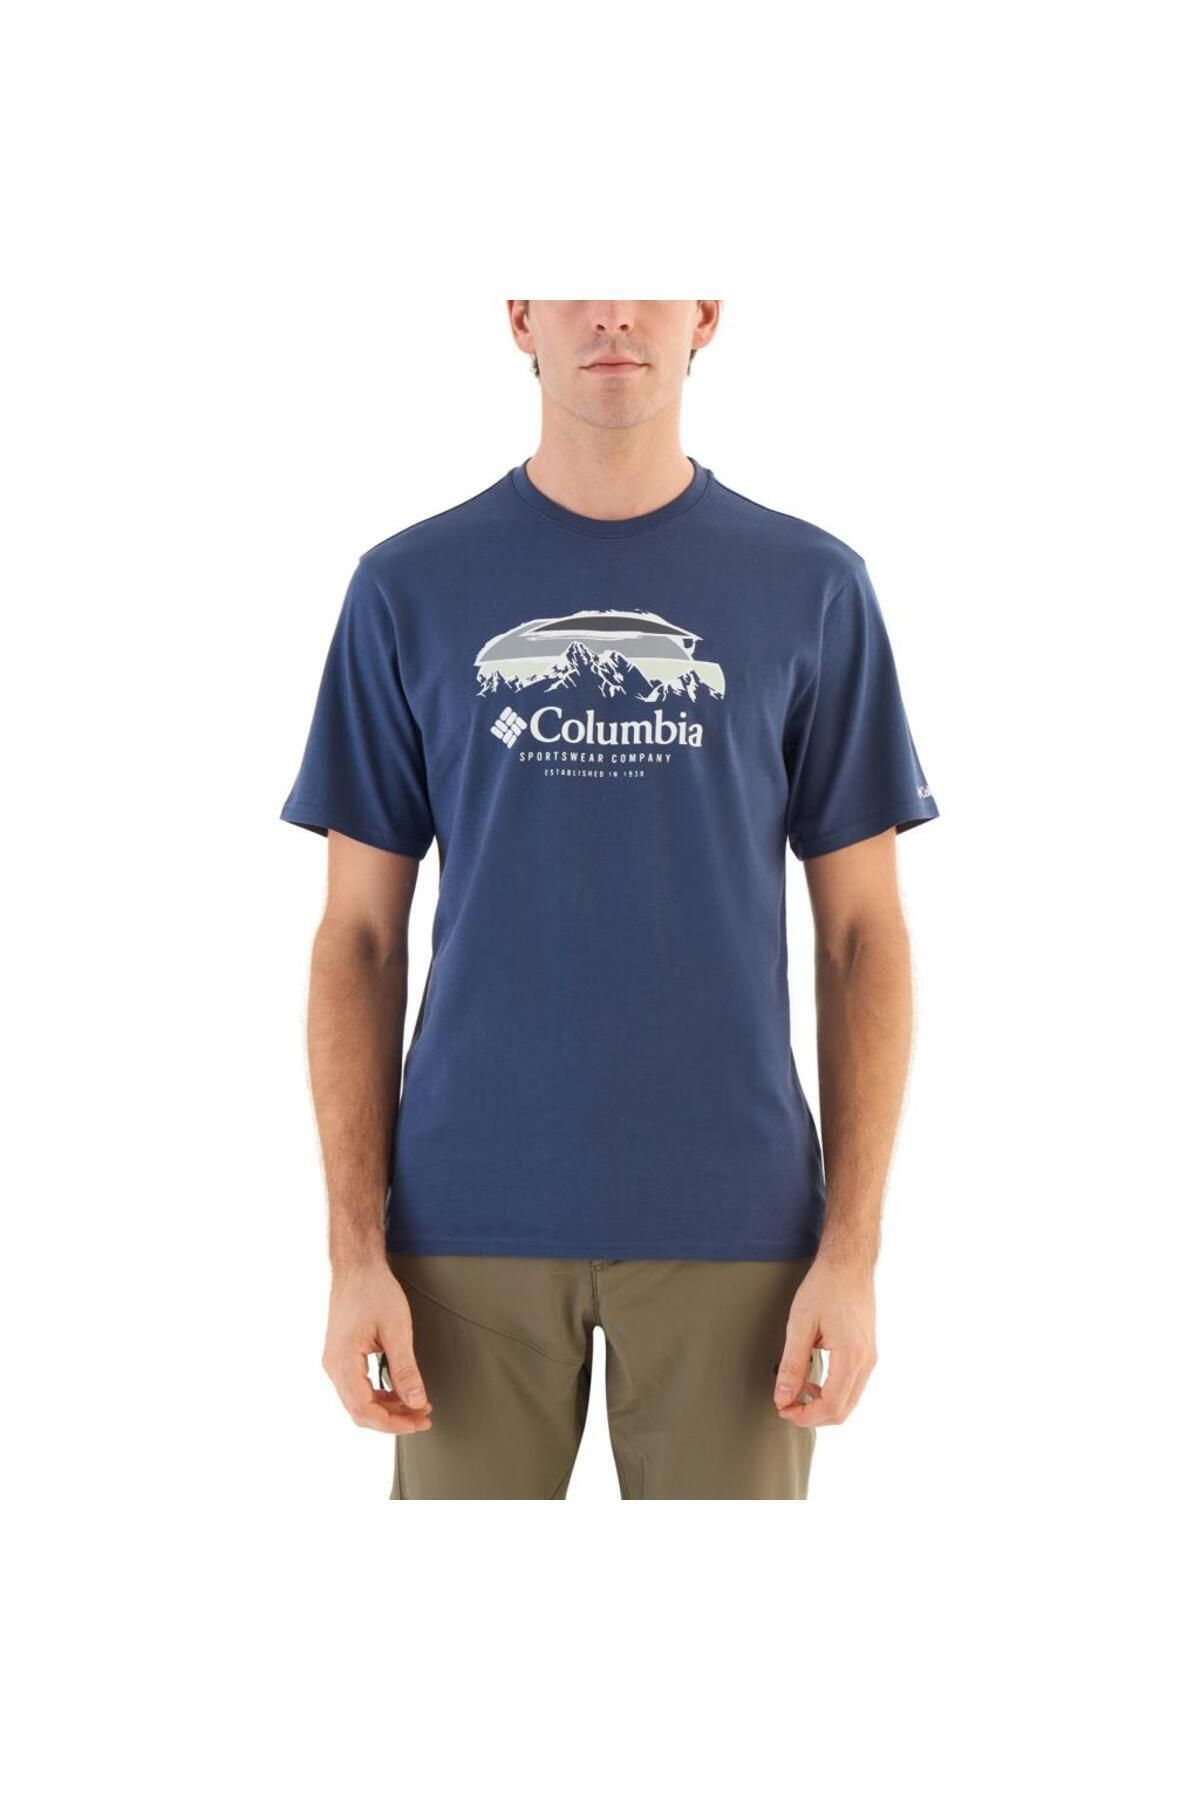 Columbia CSC Hikers Haven Erkek Kisa Kollu T-Shirt Mavi CS0336-480